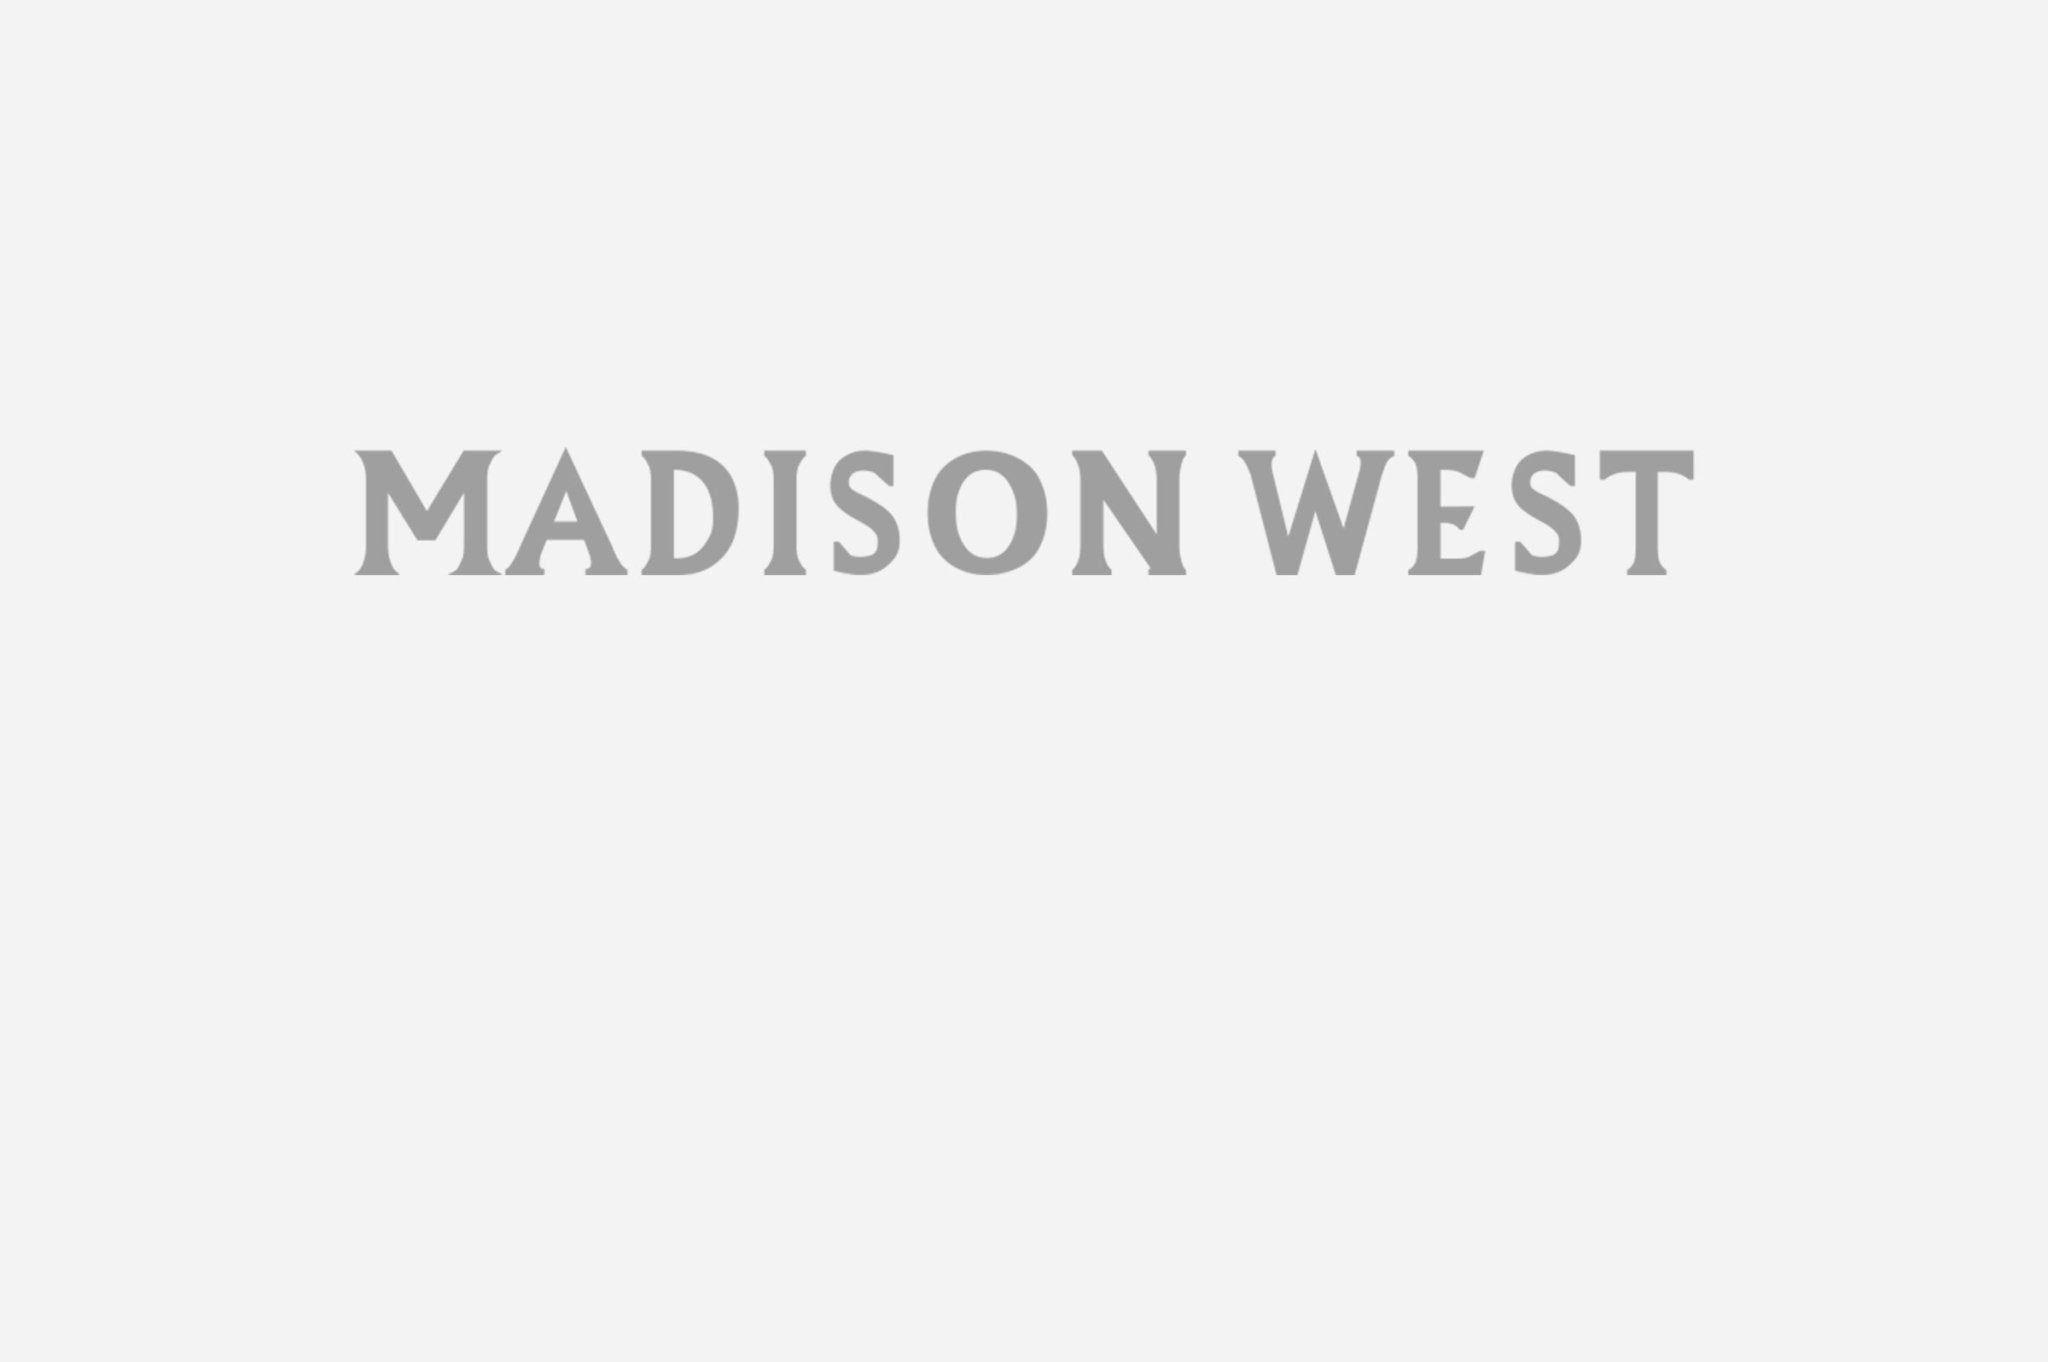 Madison West